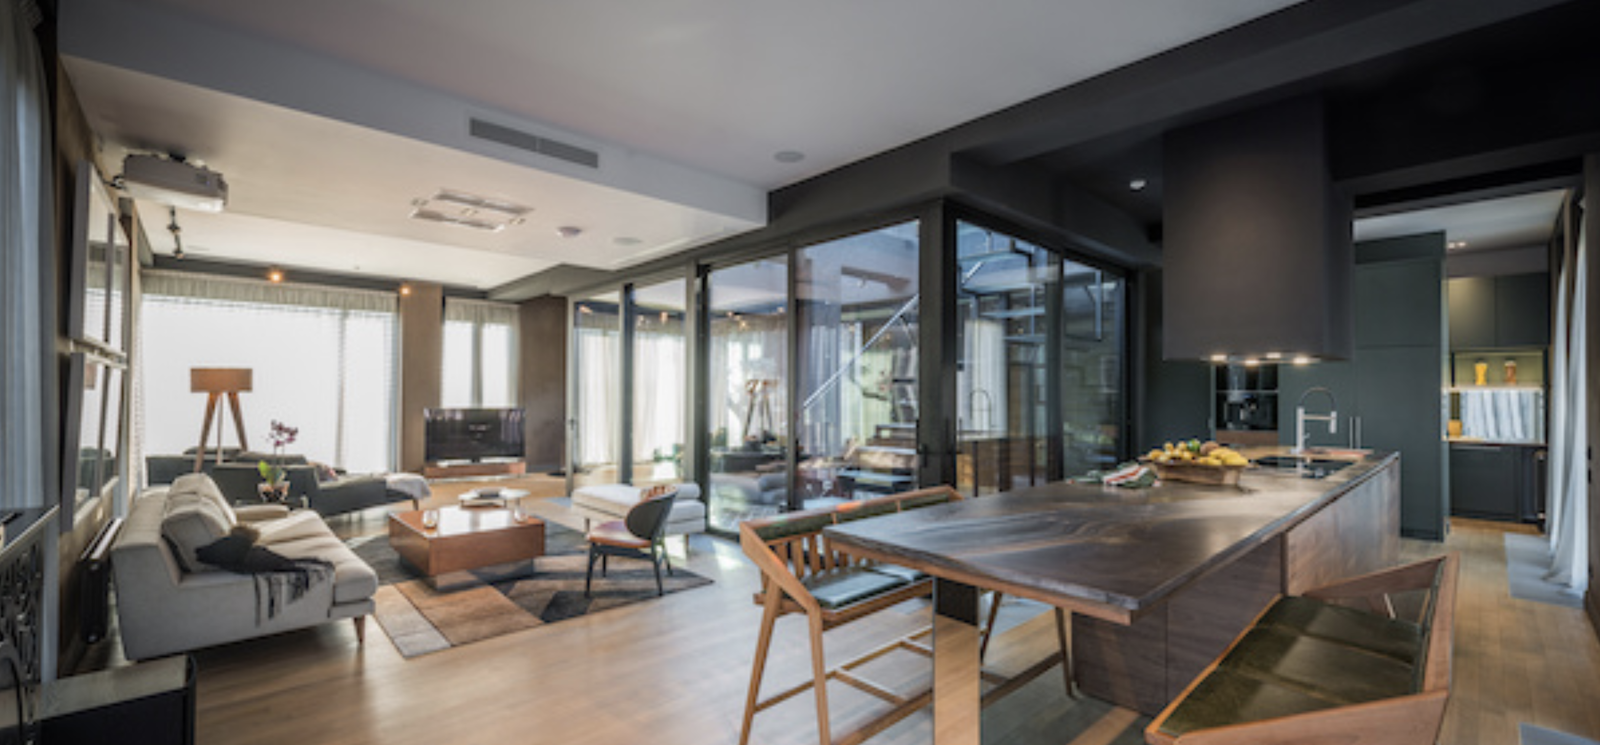 Open floor plan in luxury apartment